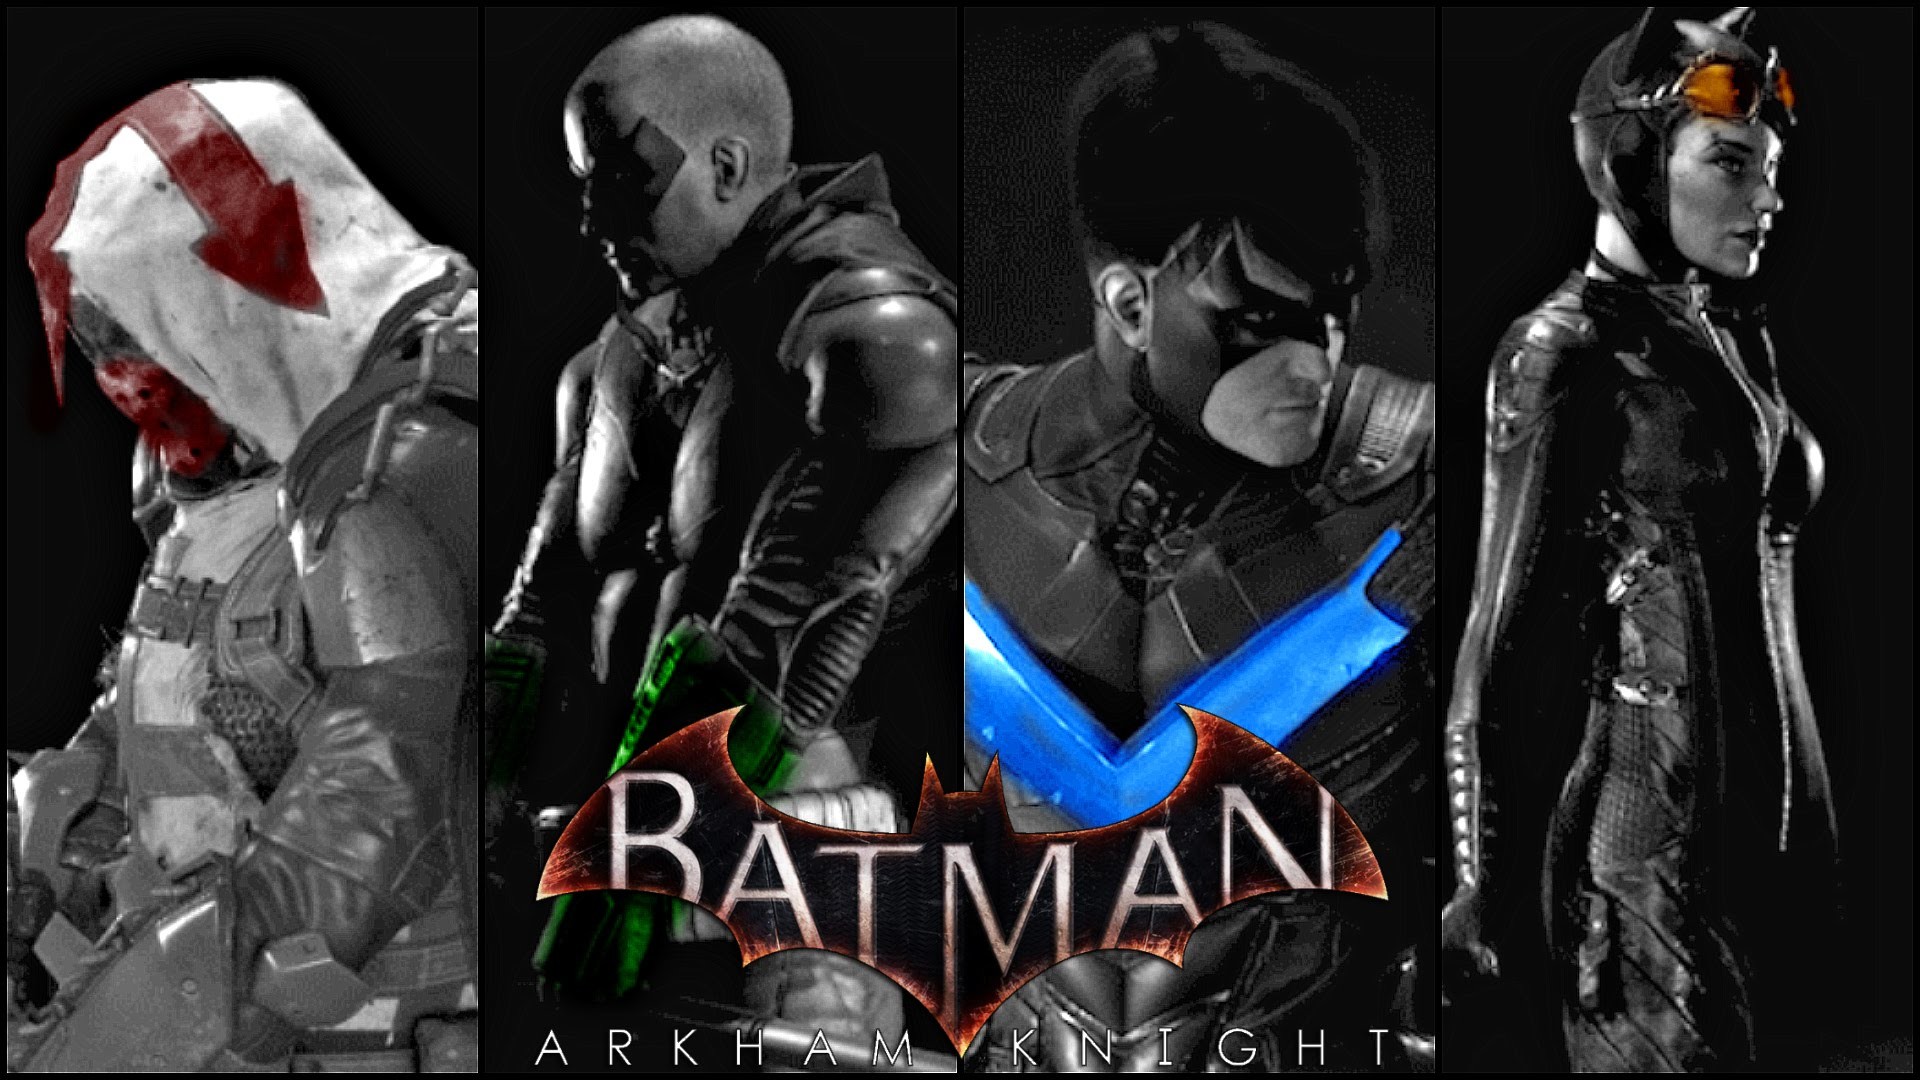 1920x1080 Batman Arkham Knight Nightwing Wallpaper Batman Arkham Knight. Batman  Arkham Knight. Source Abuse Report